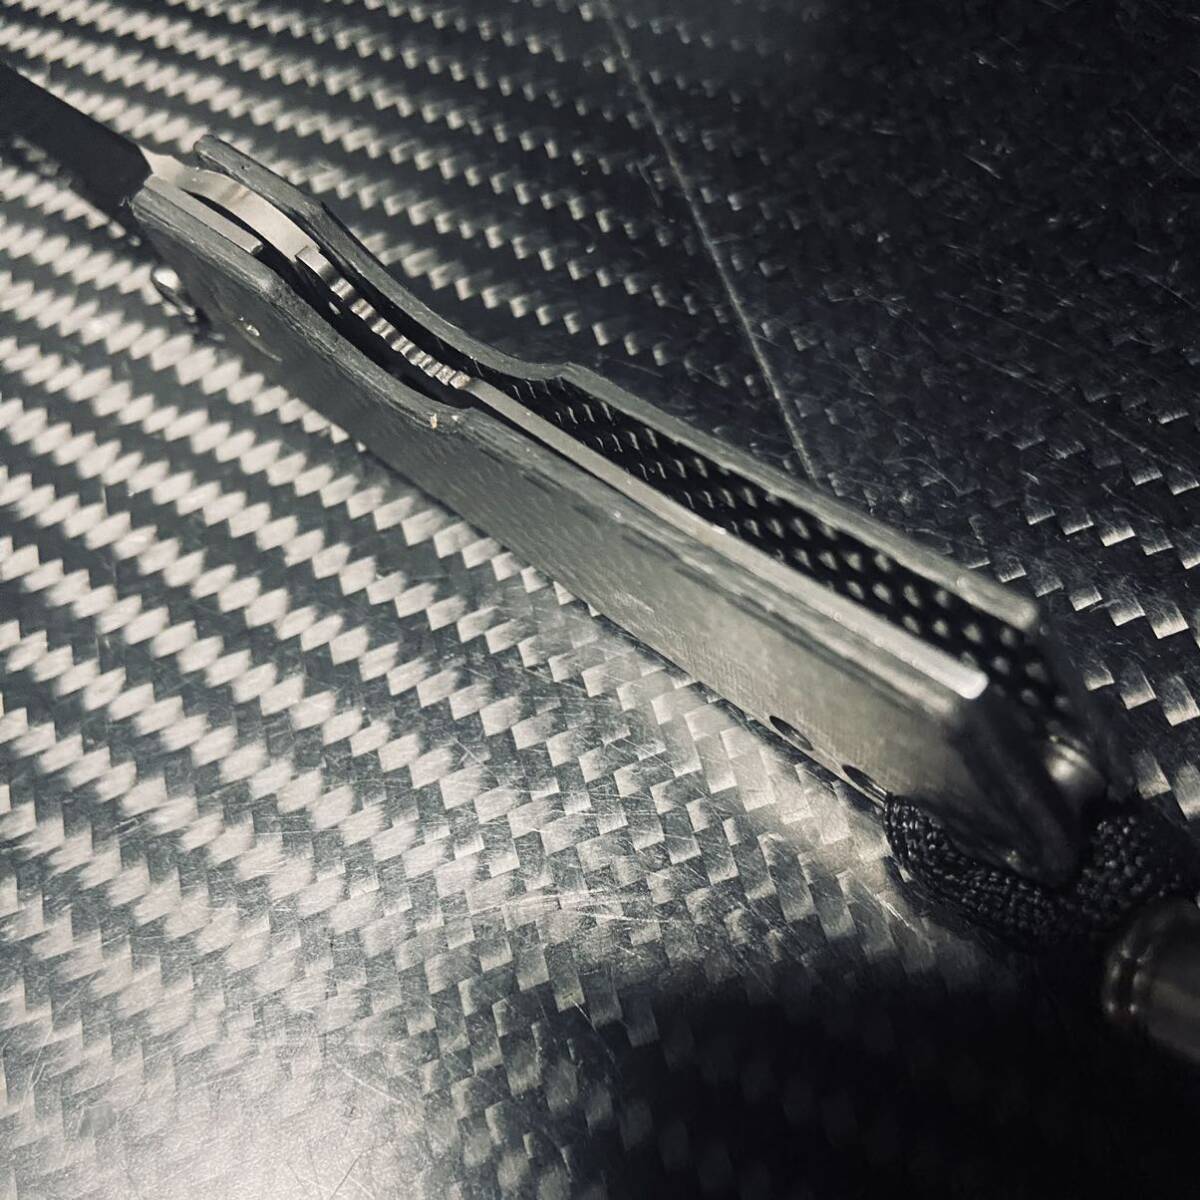 feather 非金属 カーボン製ハンドル セラミック刃 折りたたみナイフ 超軽量39g 長さ13.5cmアウトドアEDC サバイバル_画像6